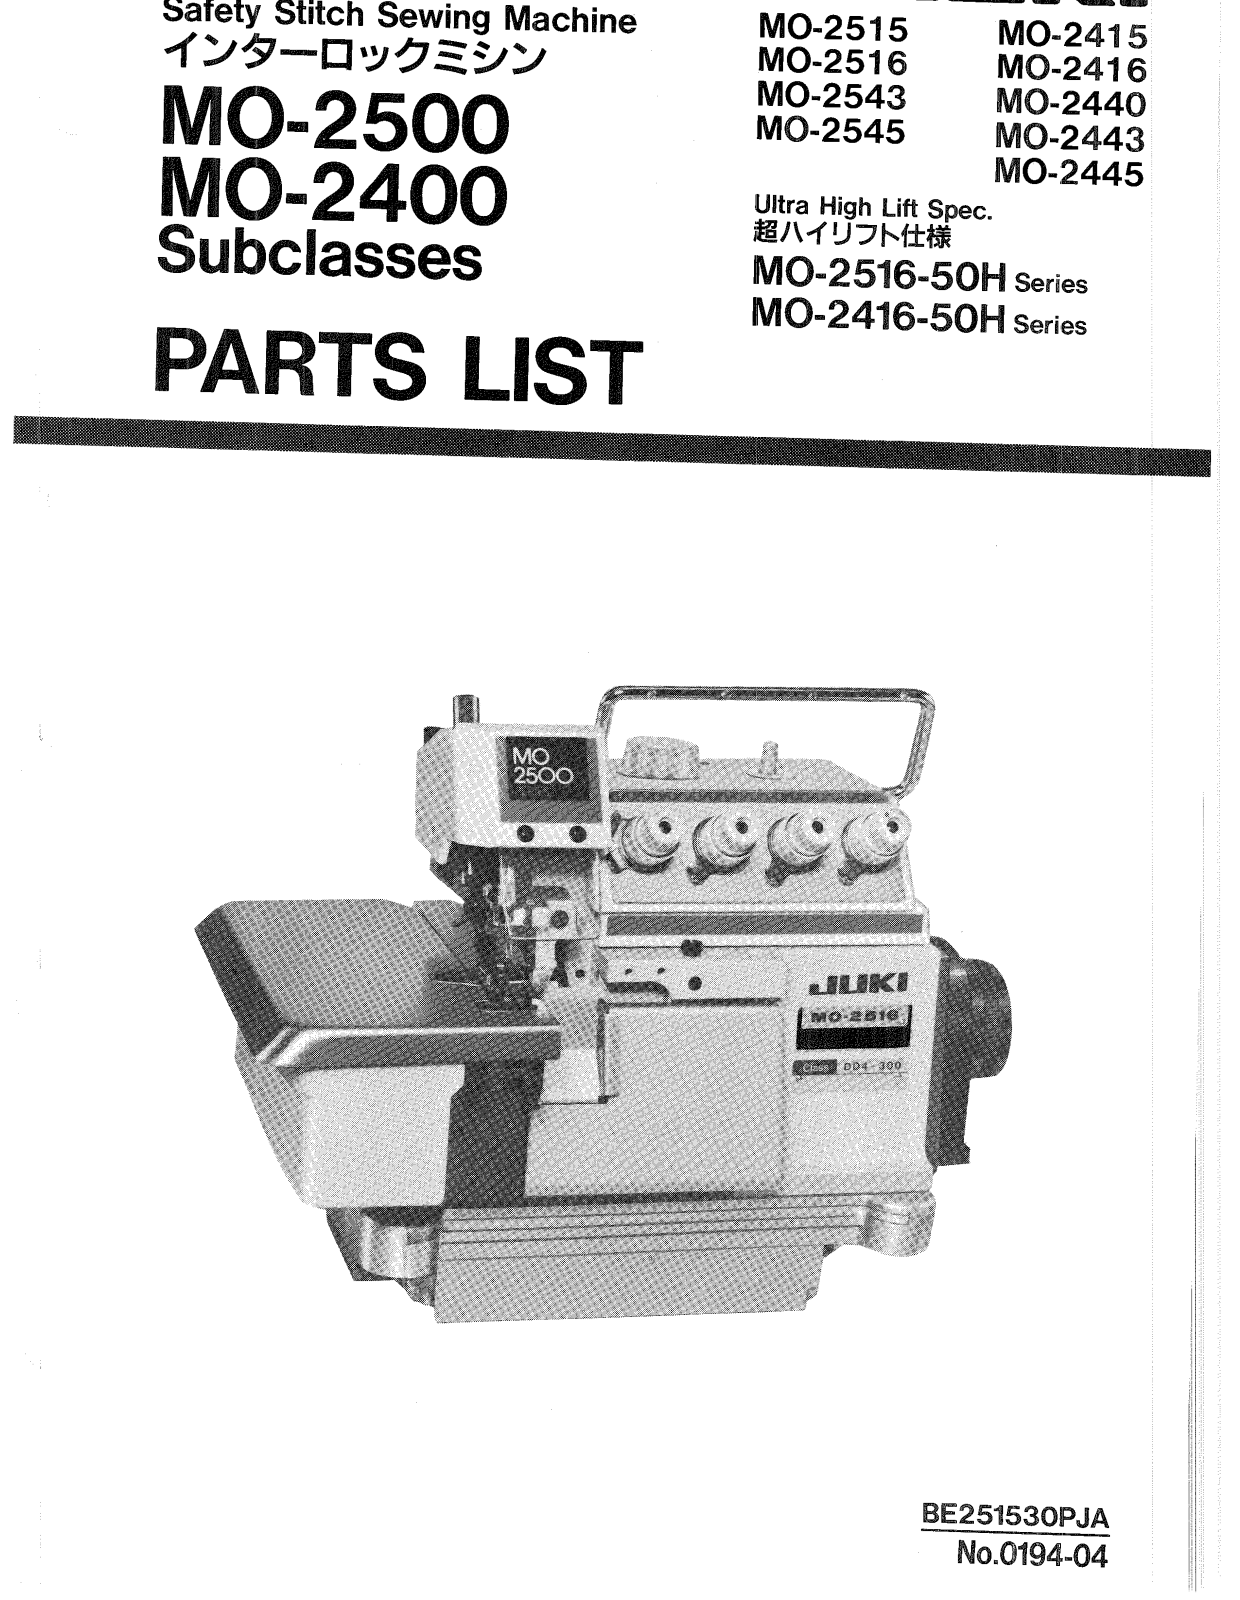 Juki MO-2415, MO-2416-5OH, MO-2515, MO-2516-5OH, MOG-2416 Parts List